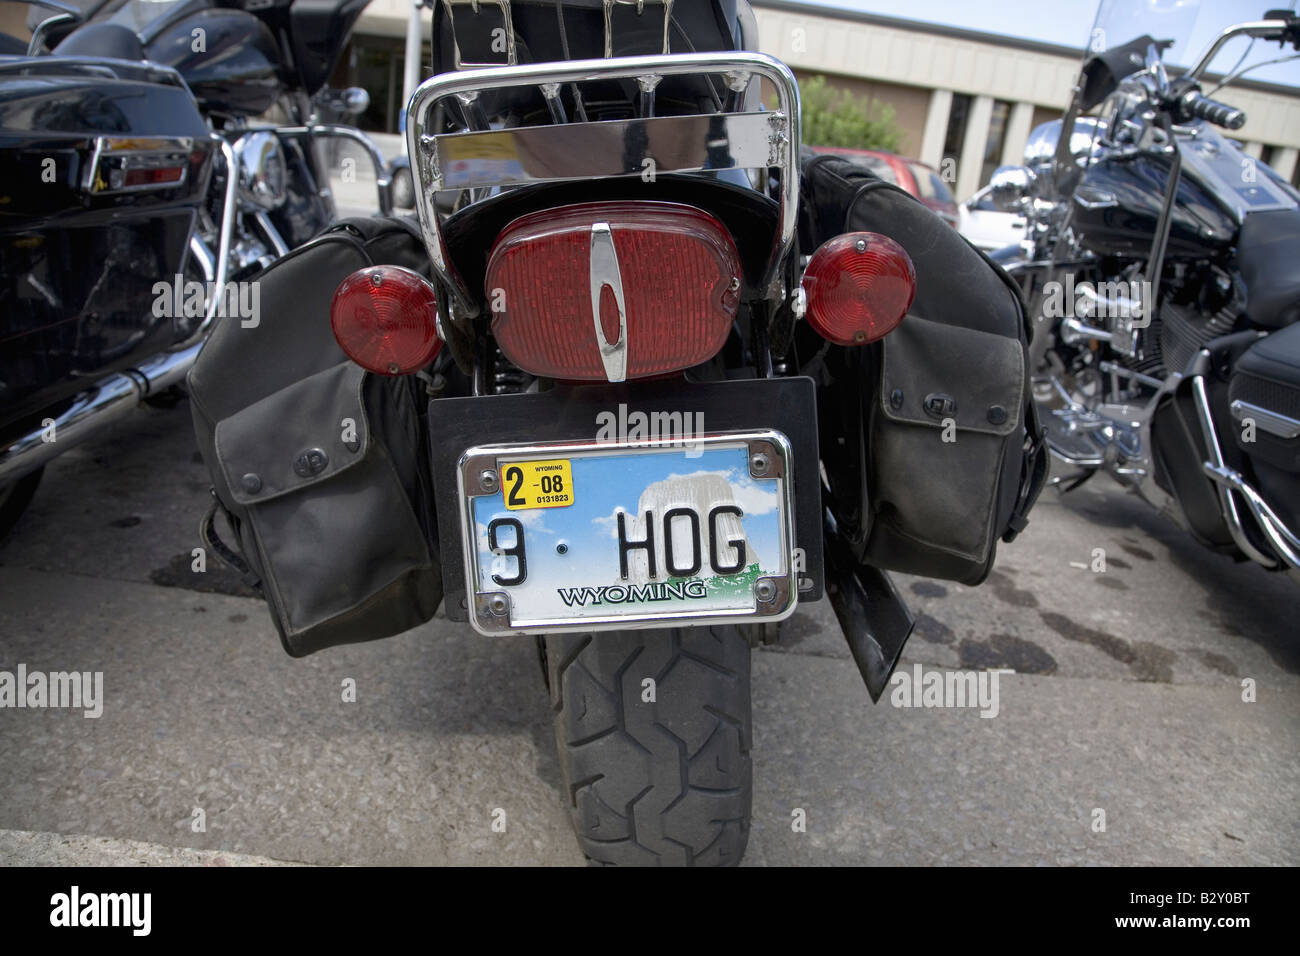 Wyoming benutzerdefinierte Nummernschild lesen "Hog" auf Rückseite Harley  an der 67. jährliche Sturgis Motorcycle Rally, SD Stockfotografie - Alamy